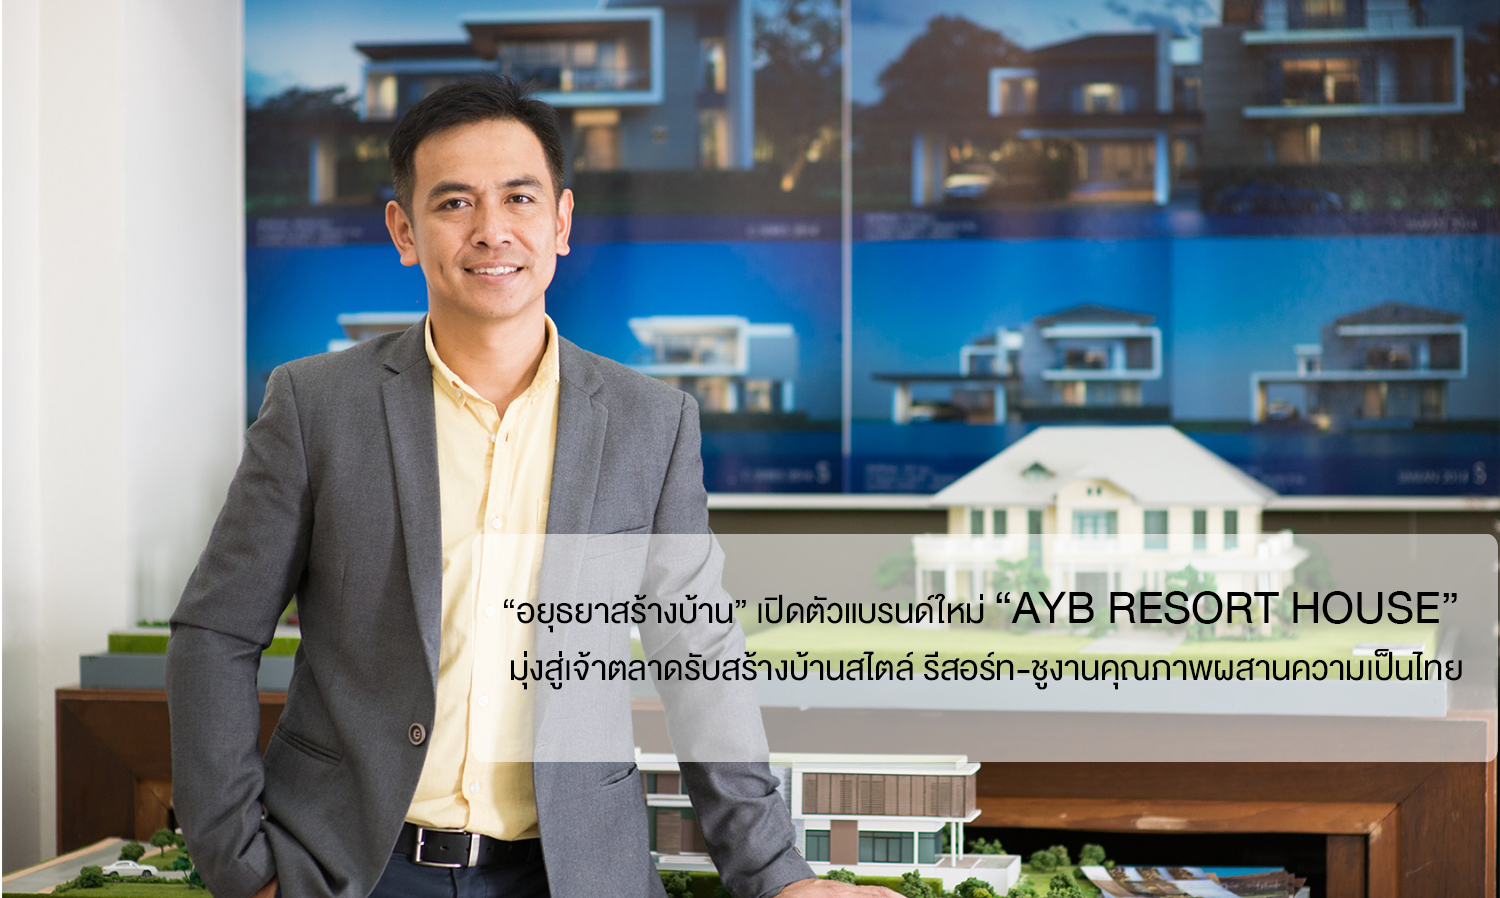 “อยุธยาสร้างบ้าน” เปิดตัวแบรนด์ใหม่ “AYB RESORT HOUSE”  มุ่งสู่เจ้าตลาดรับสร้างบ้านสไตล์ รีสอร์ท-ชูงานคุณภาพผสานความเป็นไทย